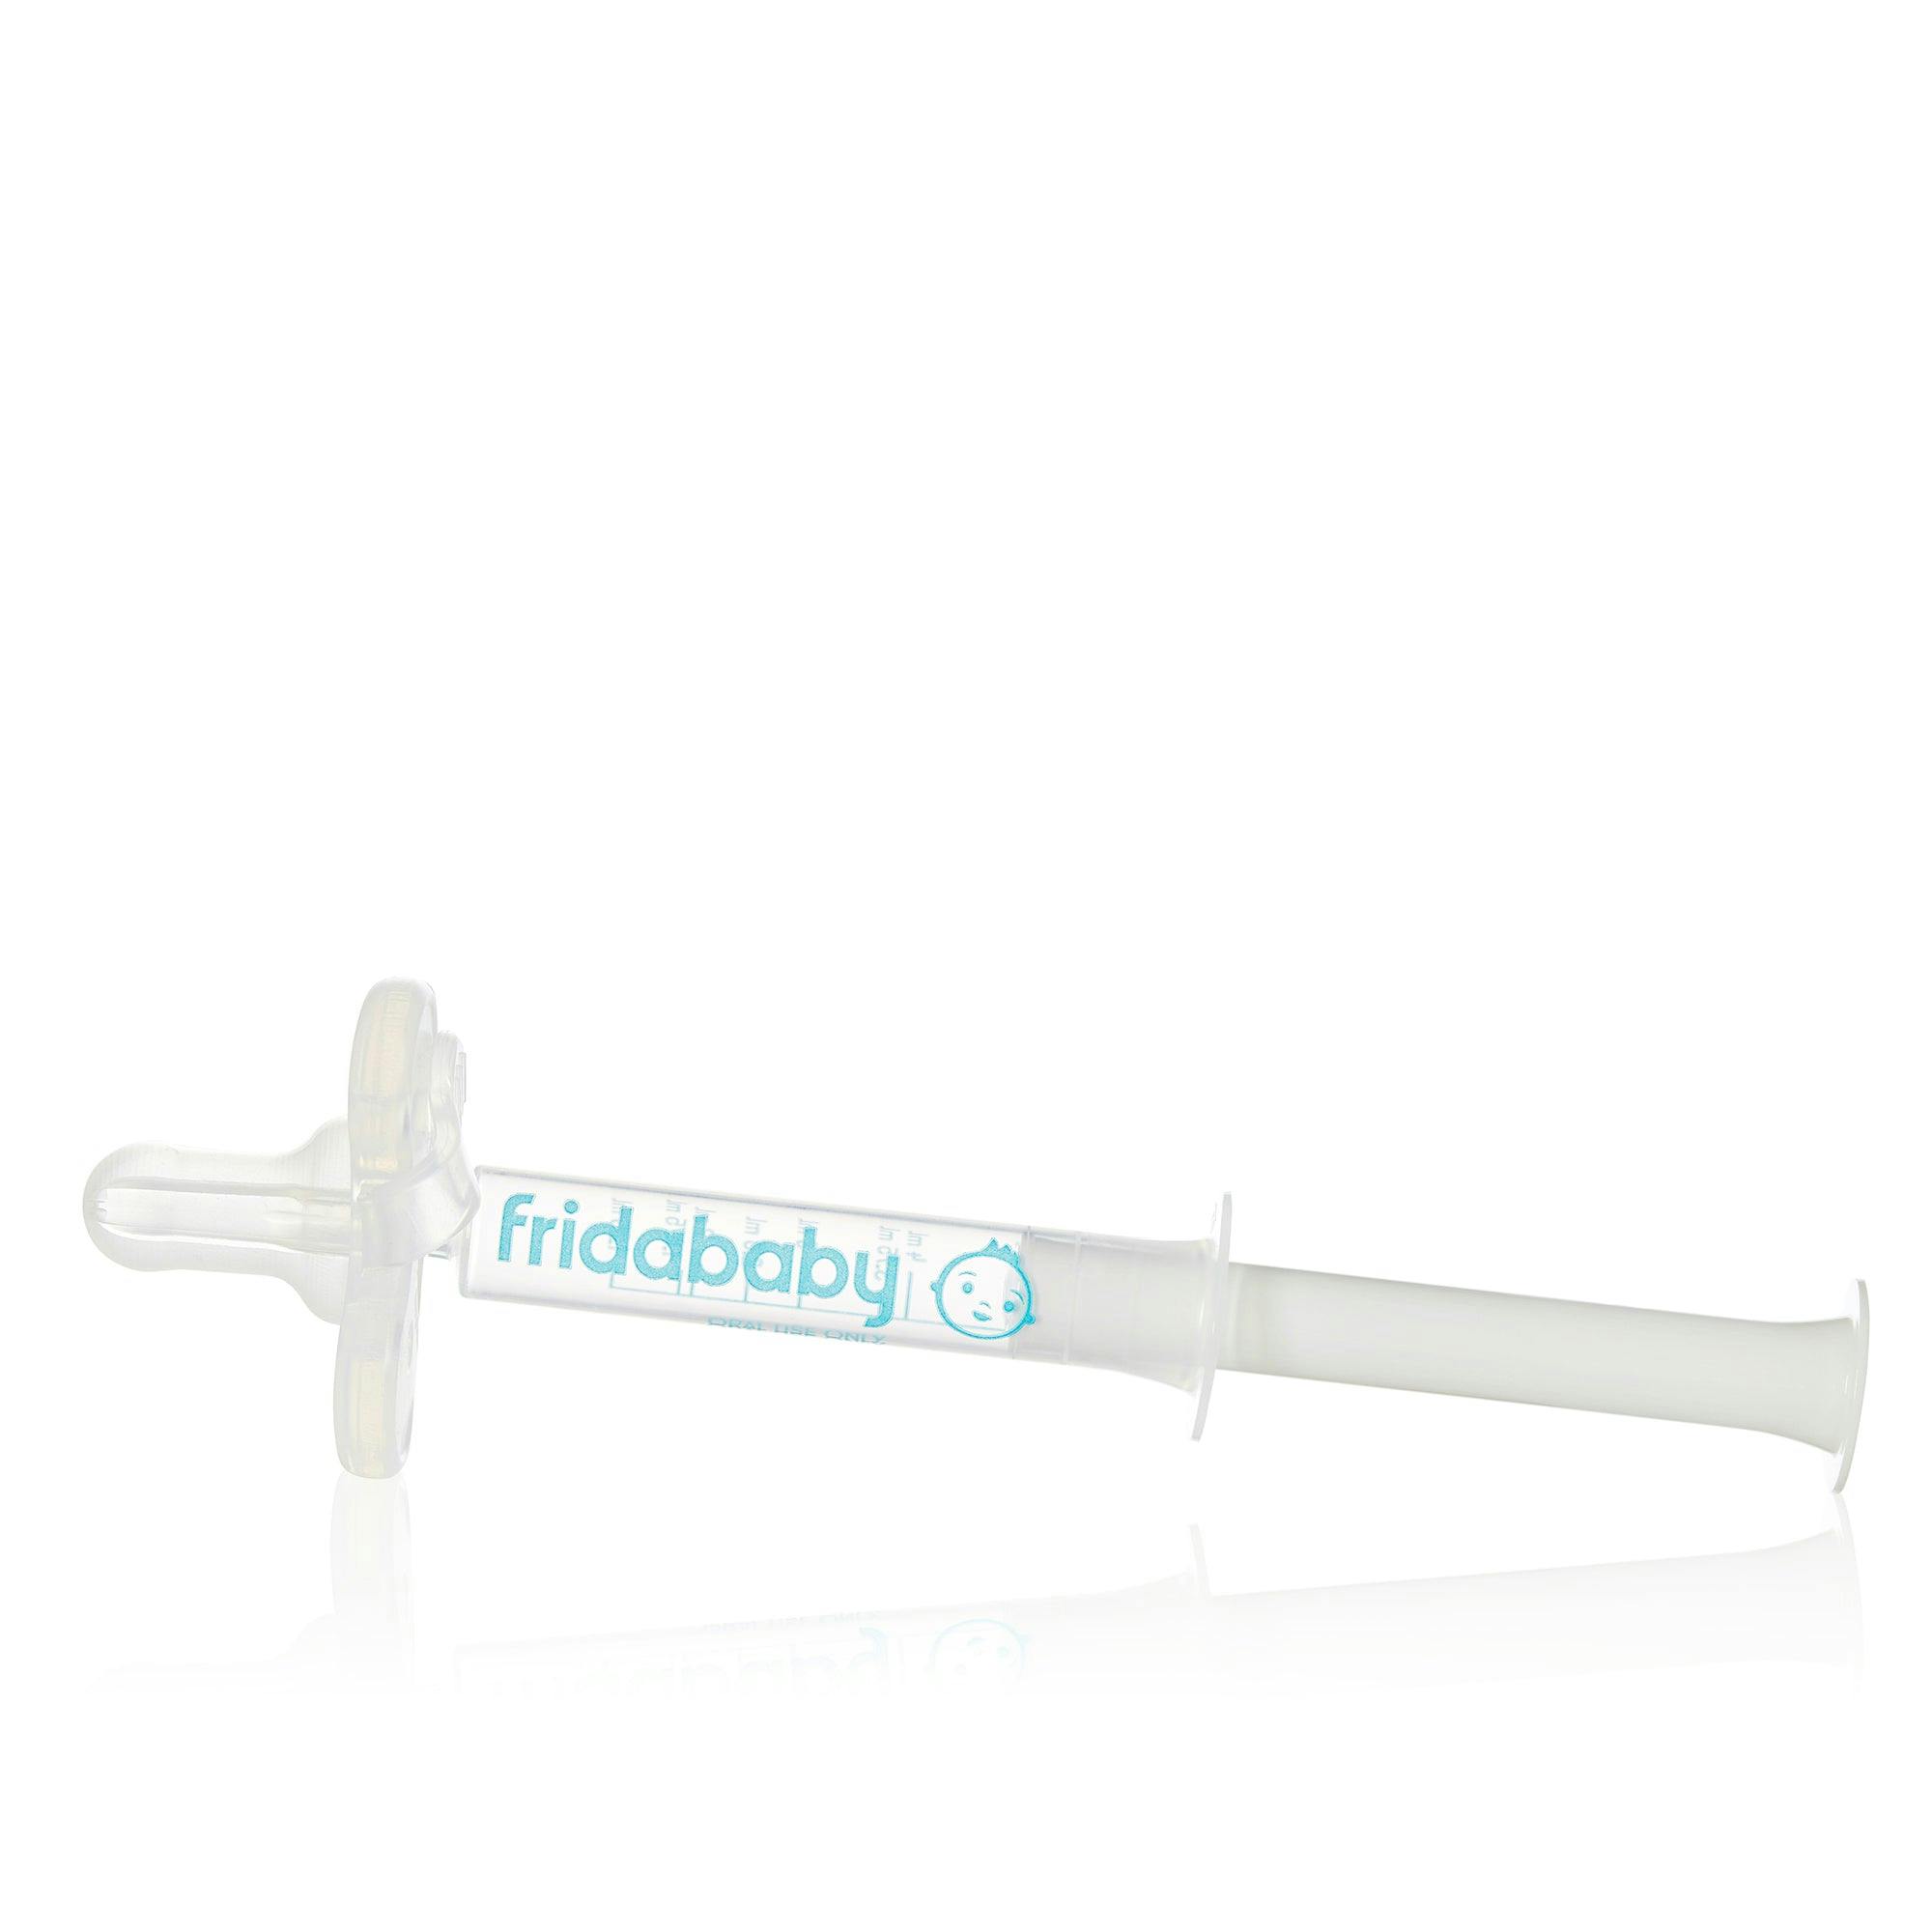 Fridababy Medifrida Accu-Dose Pacifier